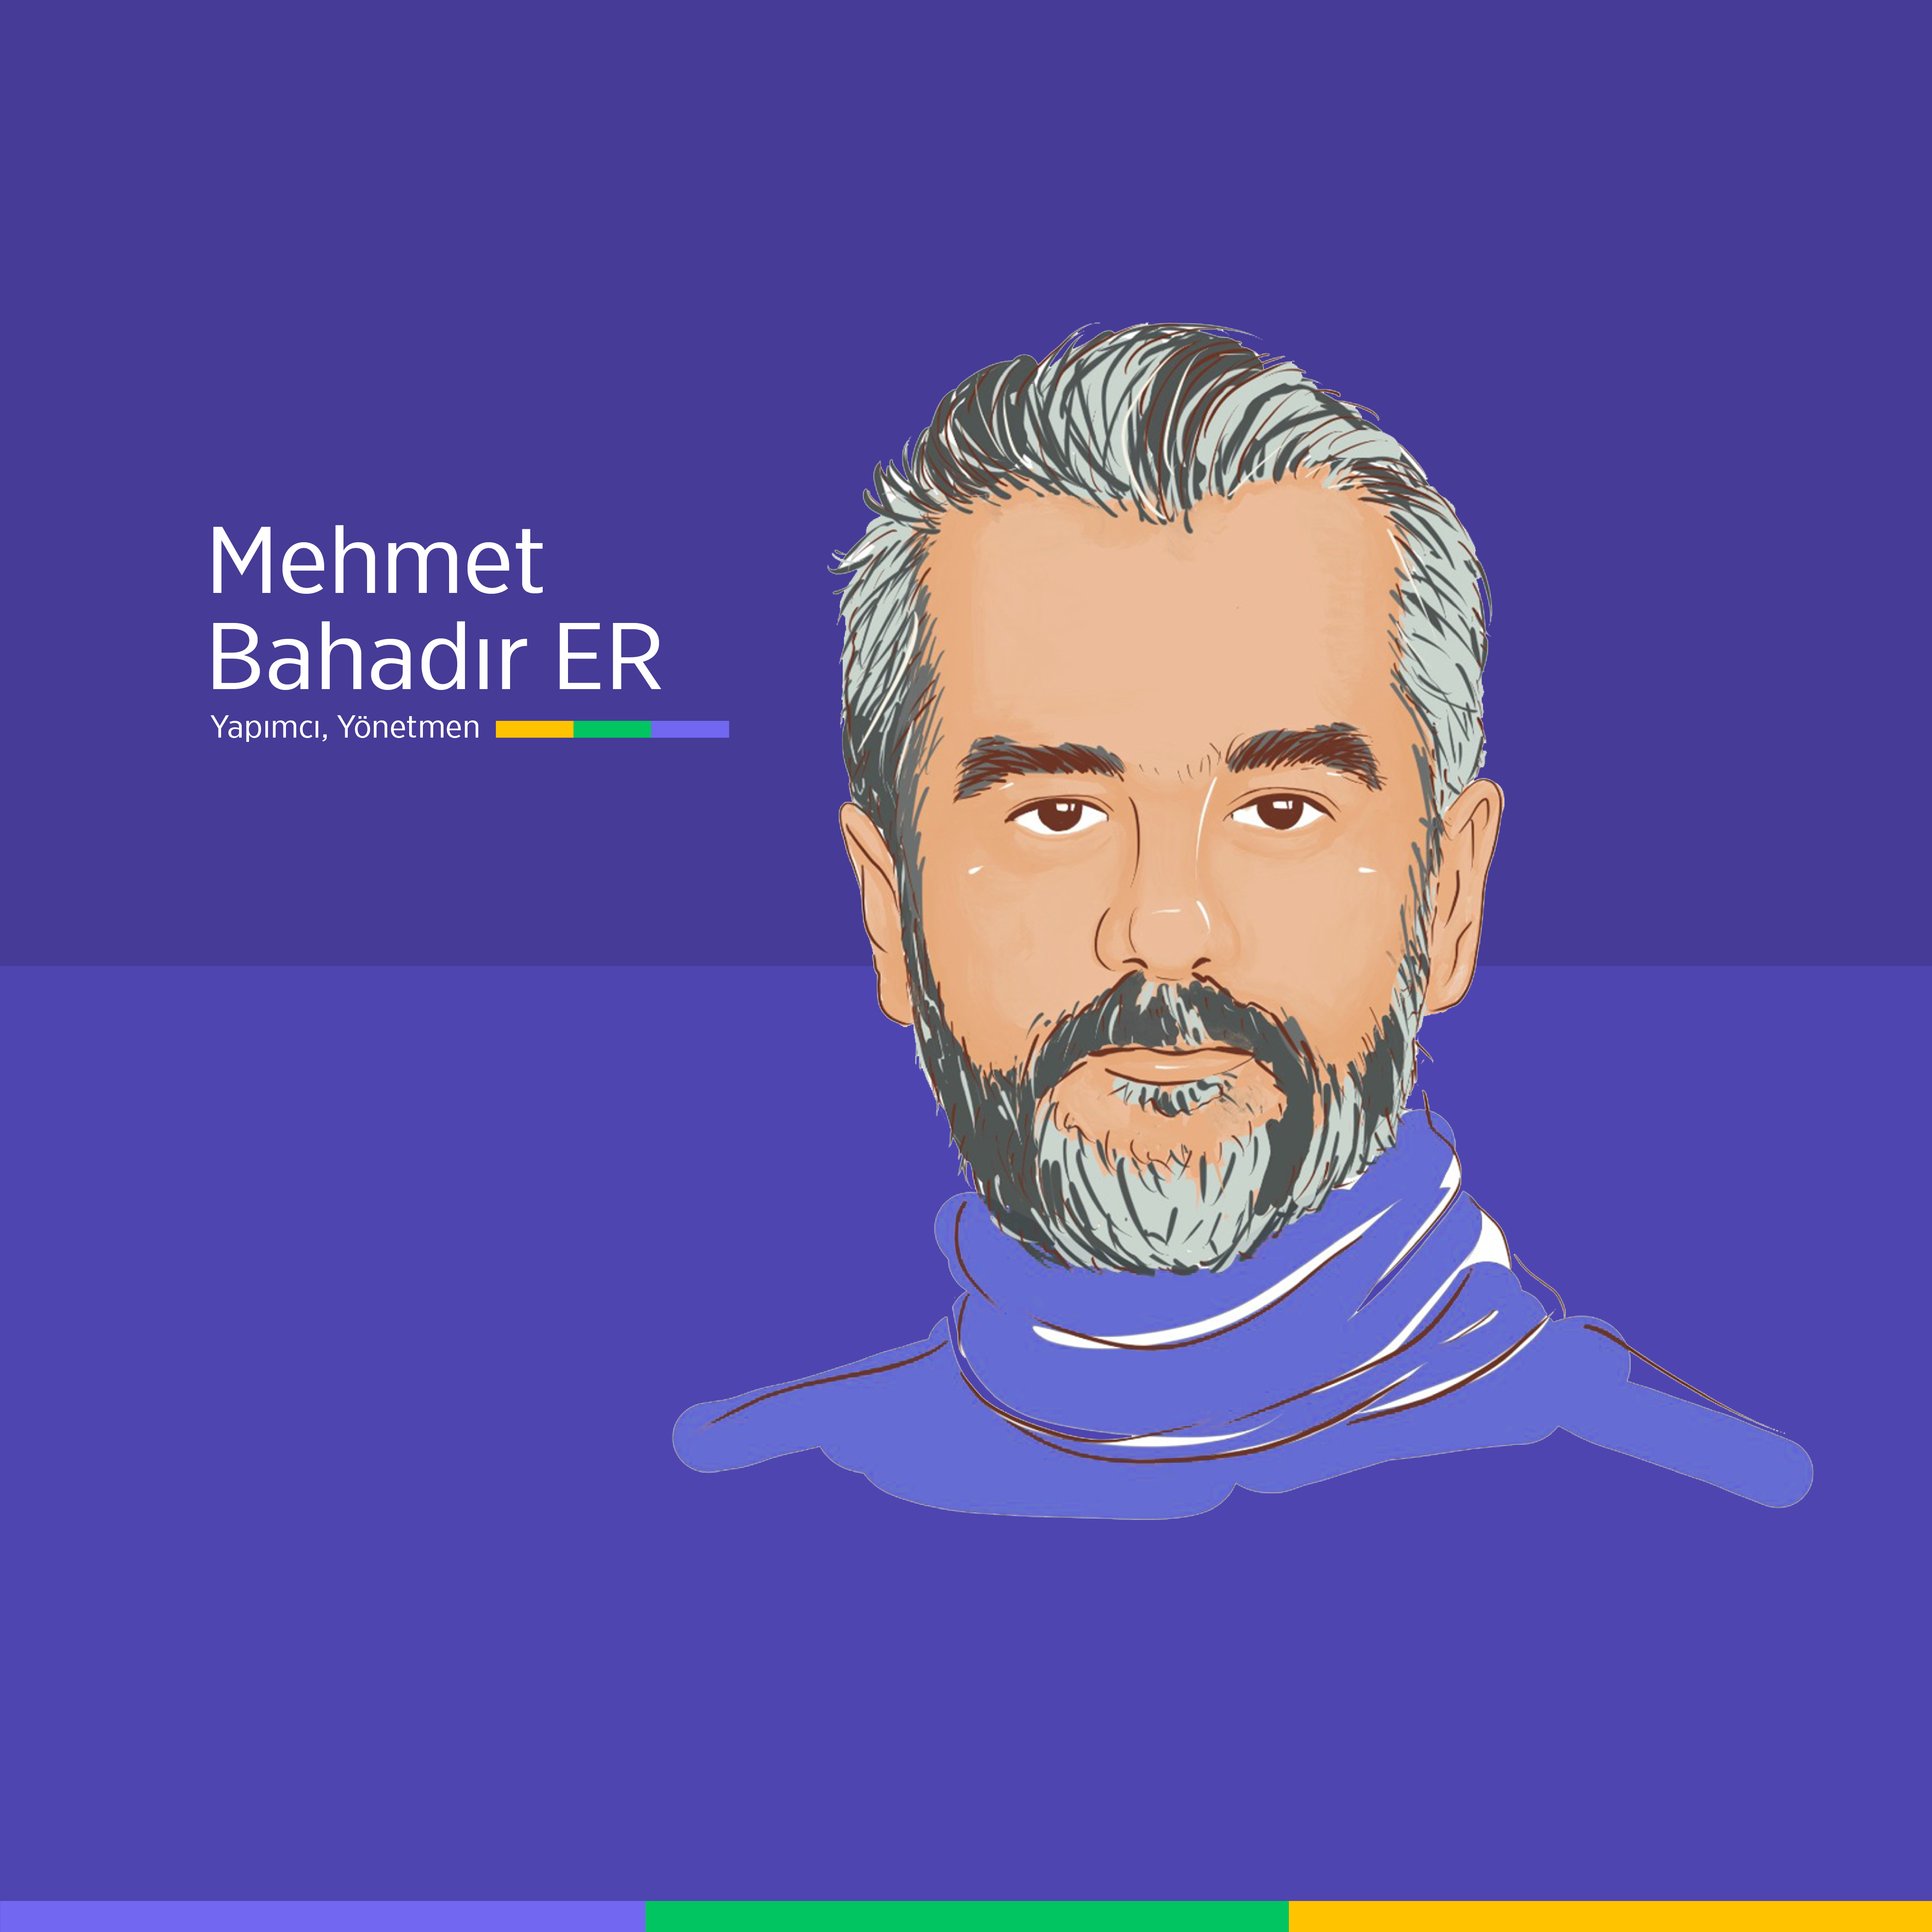 Mehmet Bahadır Er